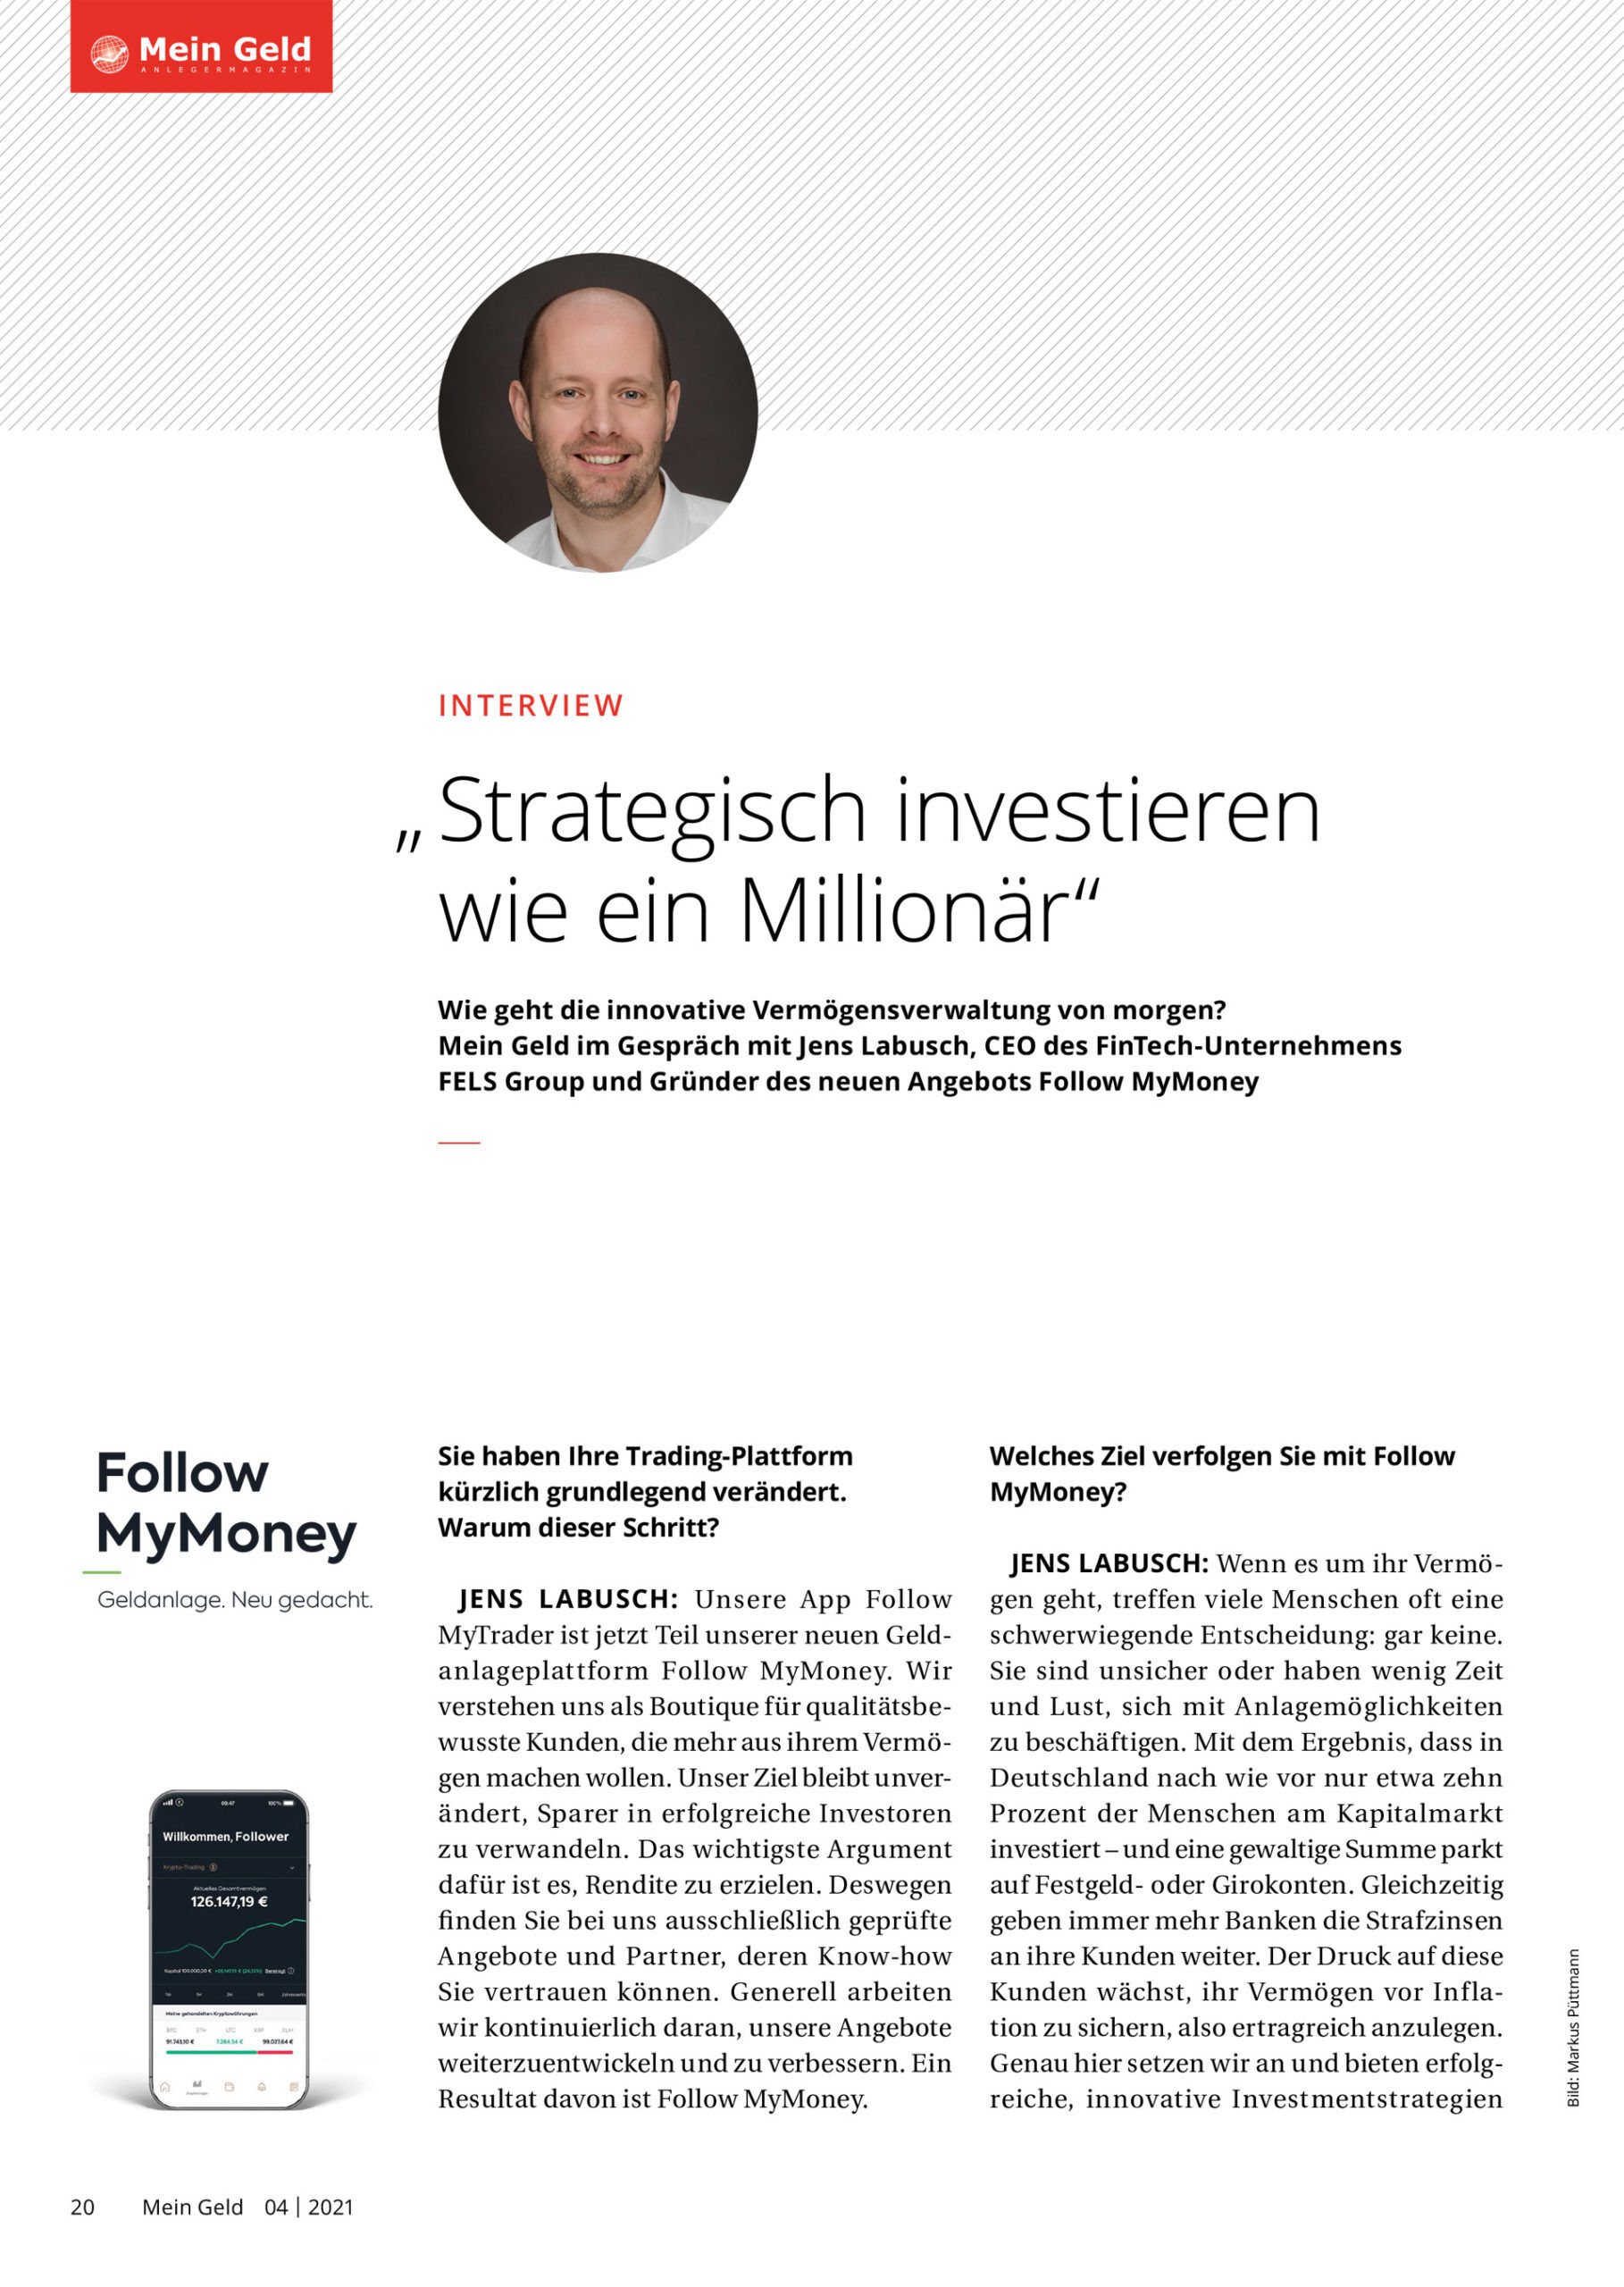 Mein Geld Interview Sept-Okt 2021: Strategisch investieren wie ein Millionär mit Follow MyMoney